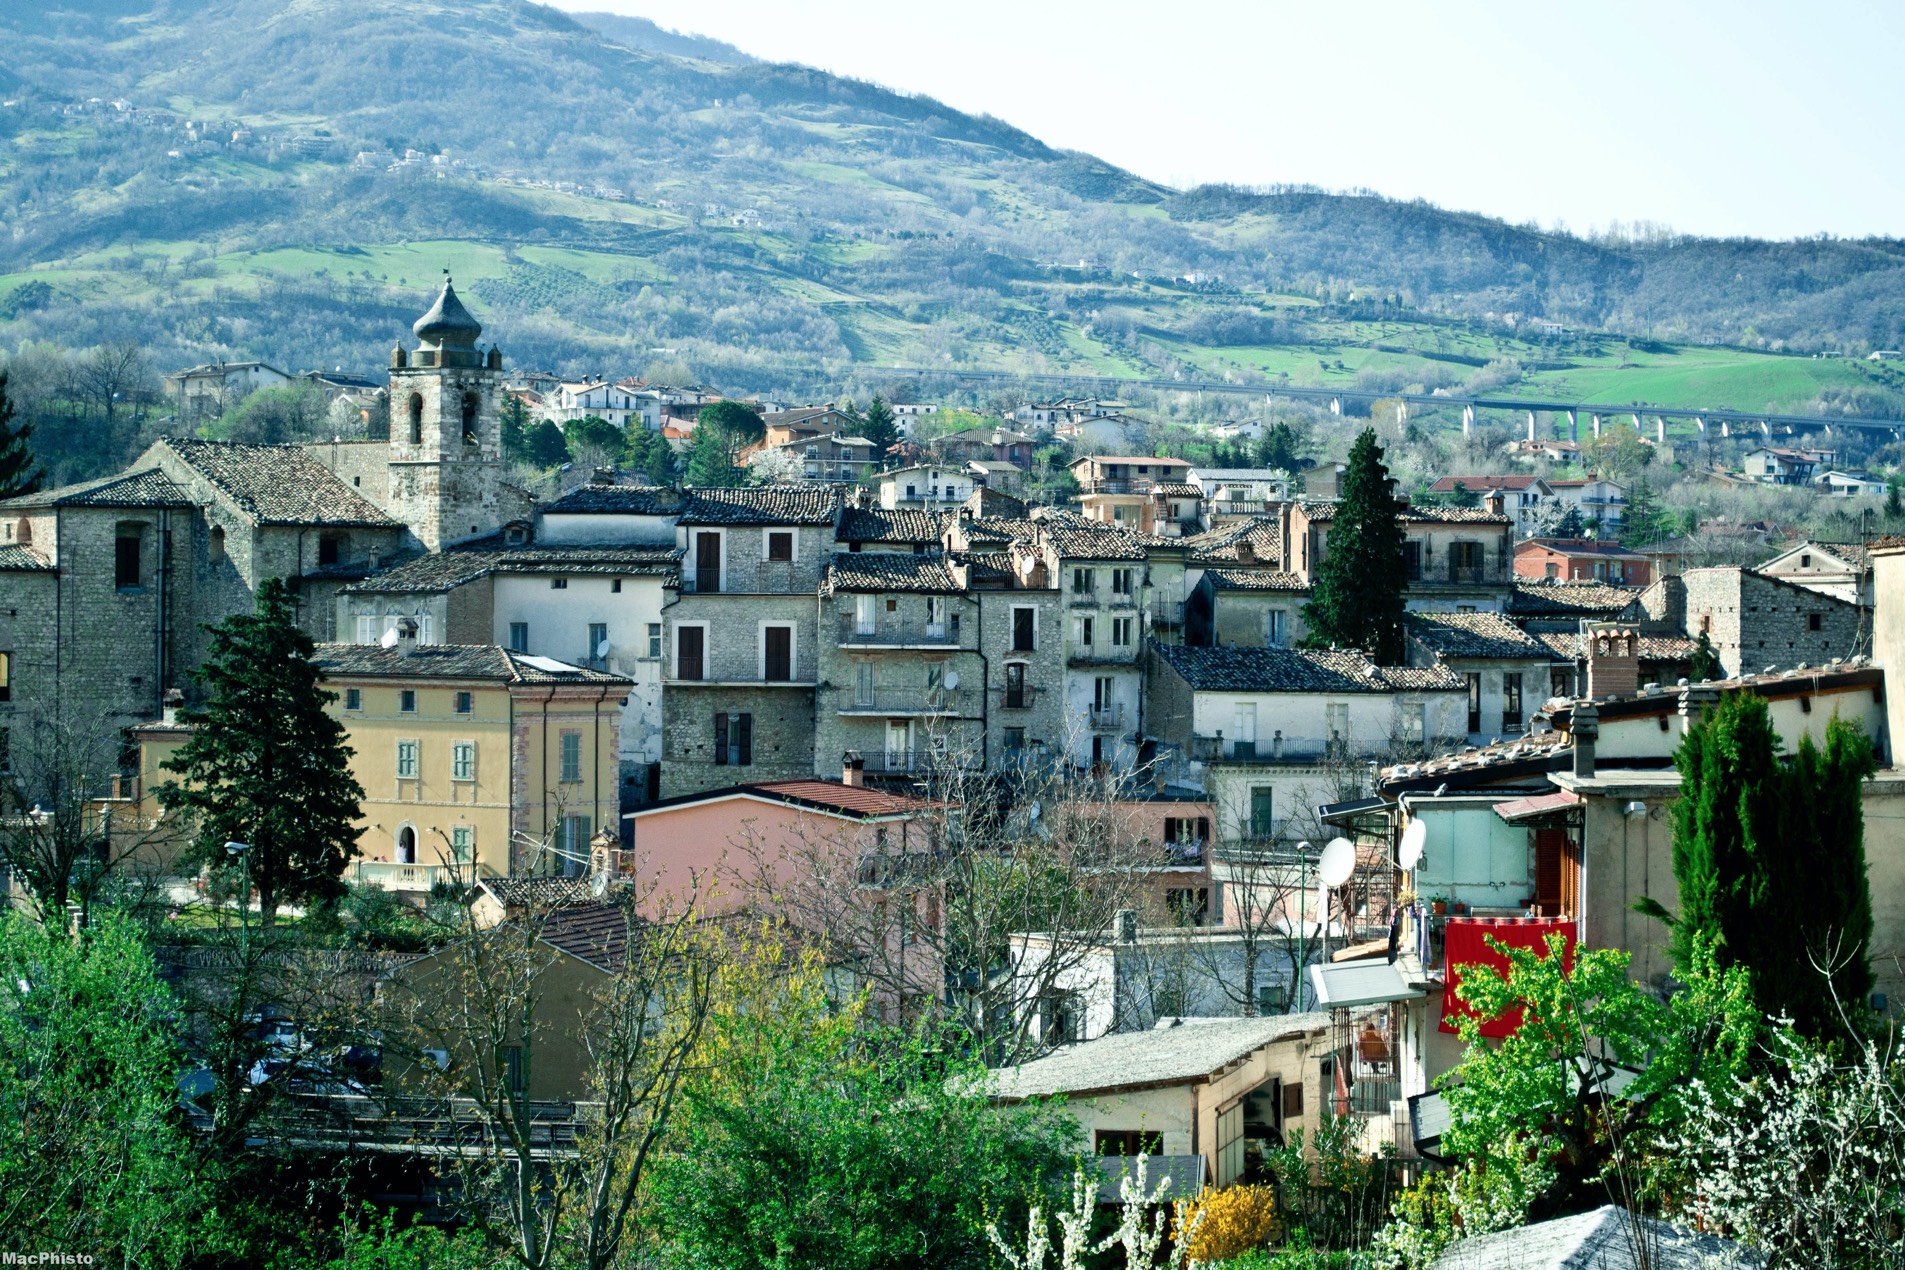 escursione in Abruzzo nella valle del Gran Sasso D'Italia attraverso 5 comuni